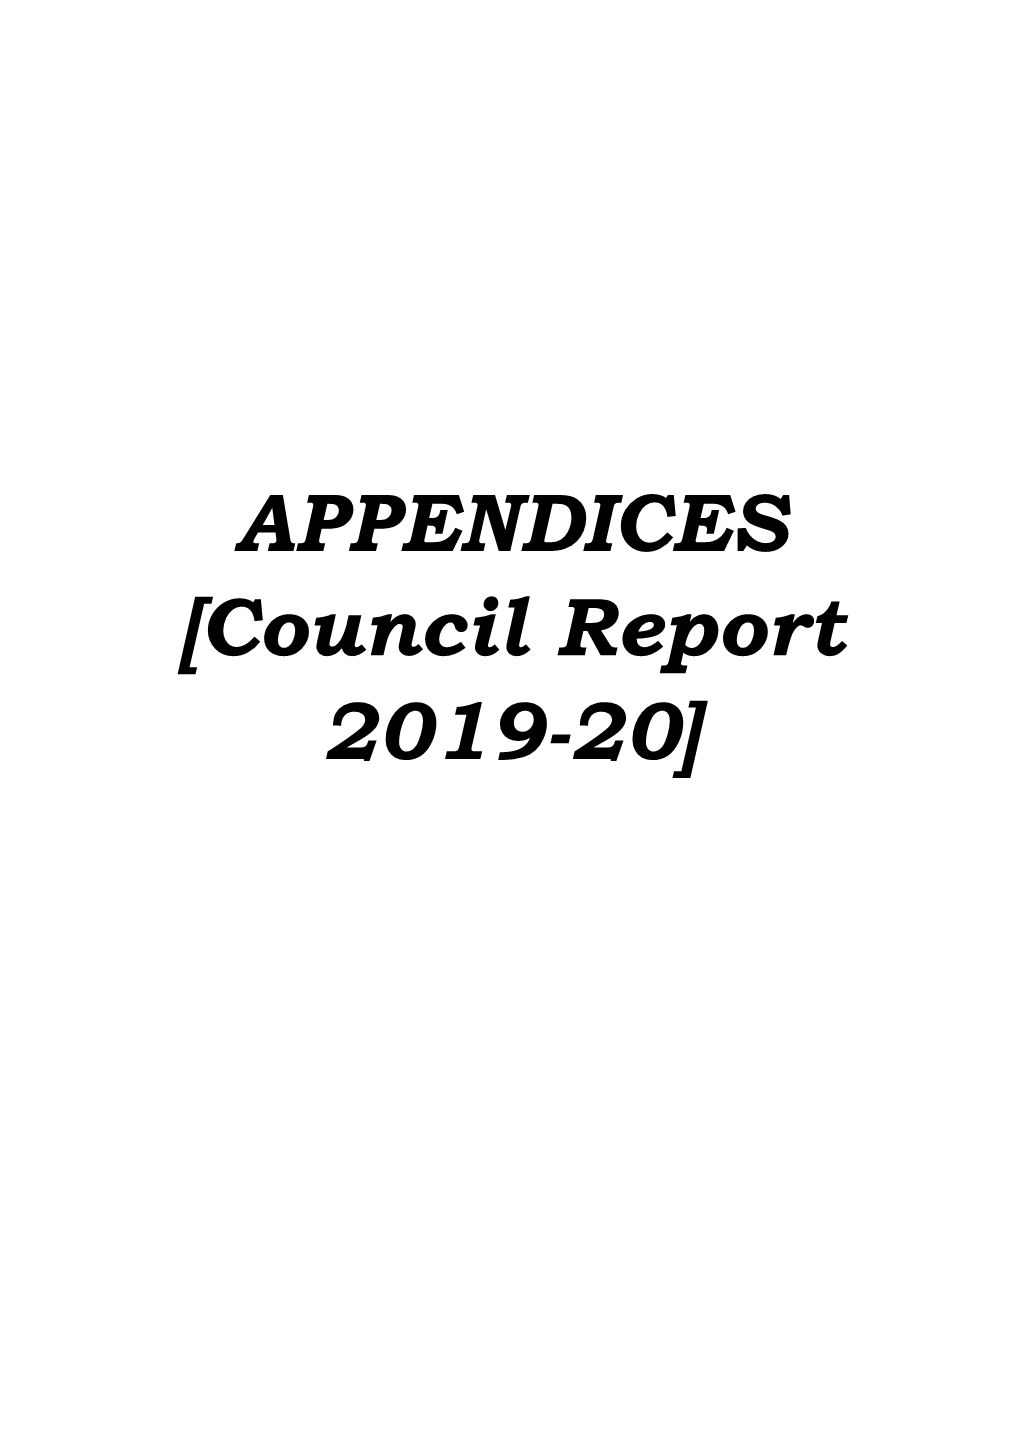 APPENDICES [Council Report 2019-20]